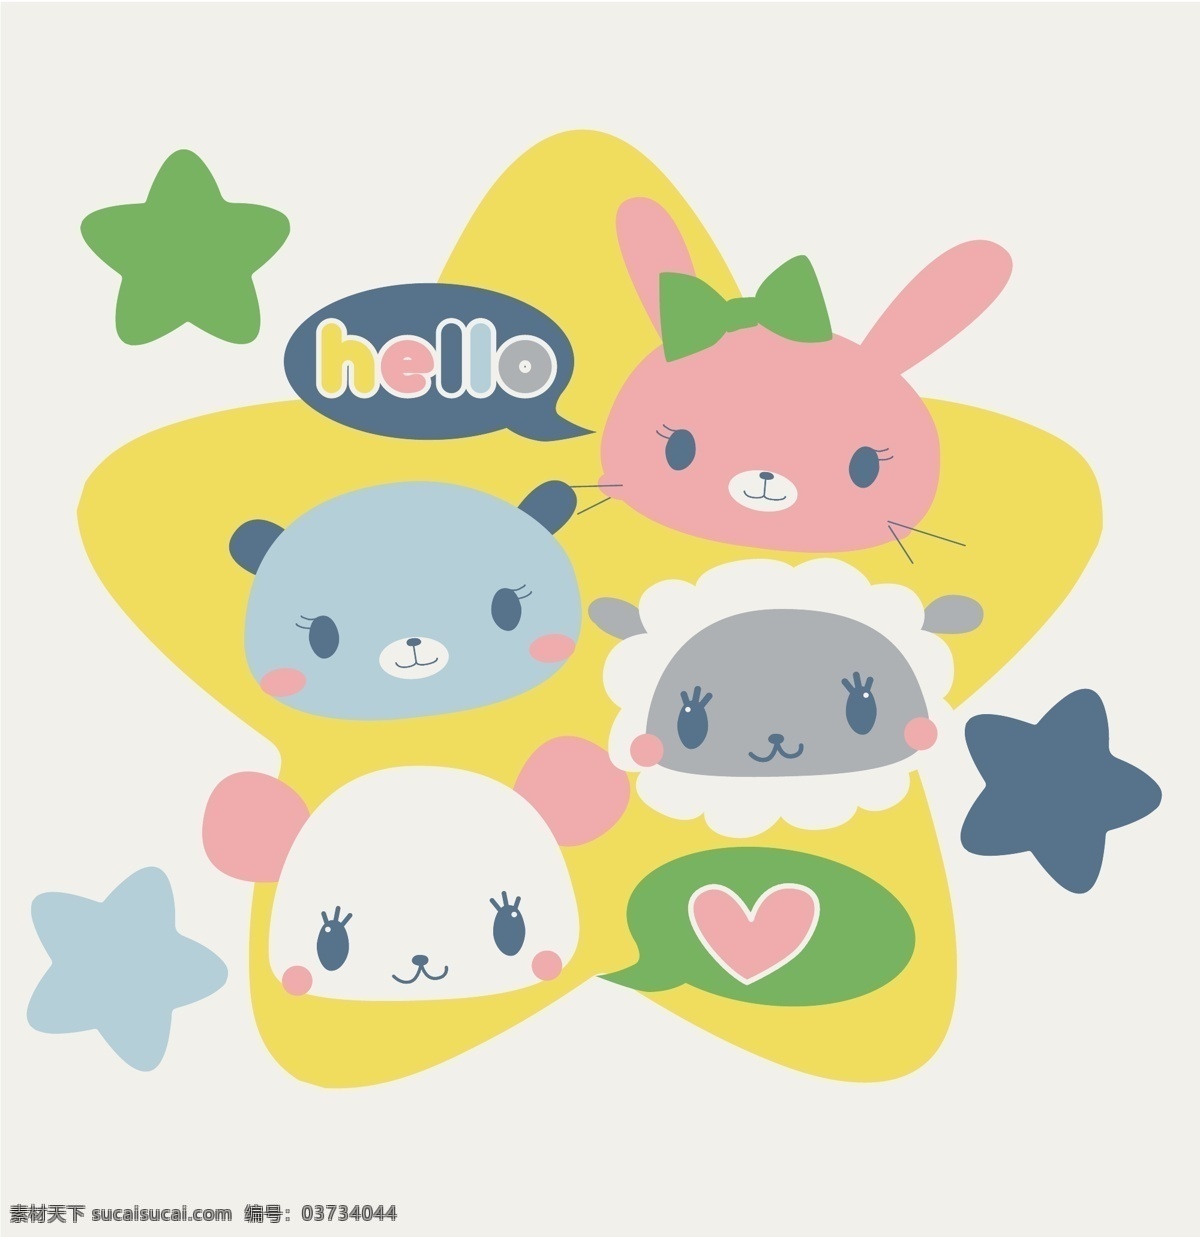 五角星 动物 卡通 图案 矢量 老鼠 小羊 熊猫 黑板 手绘 英文 插画 线条 水果 蔬菜